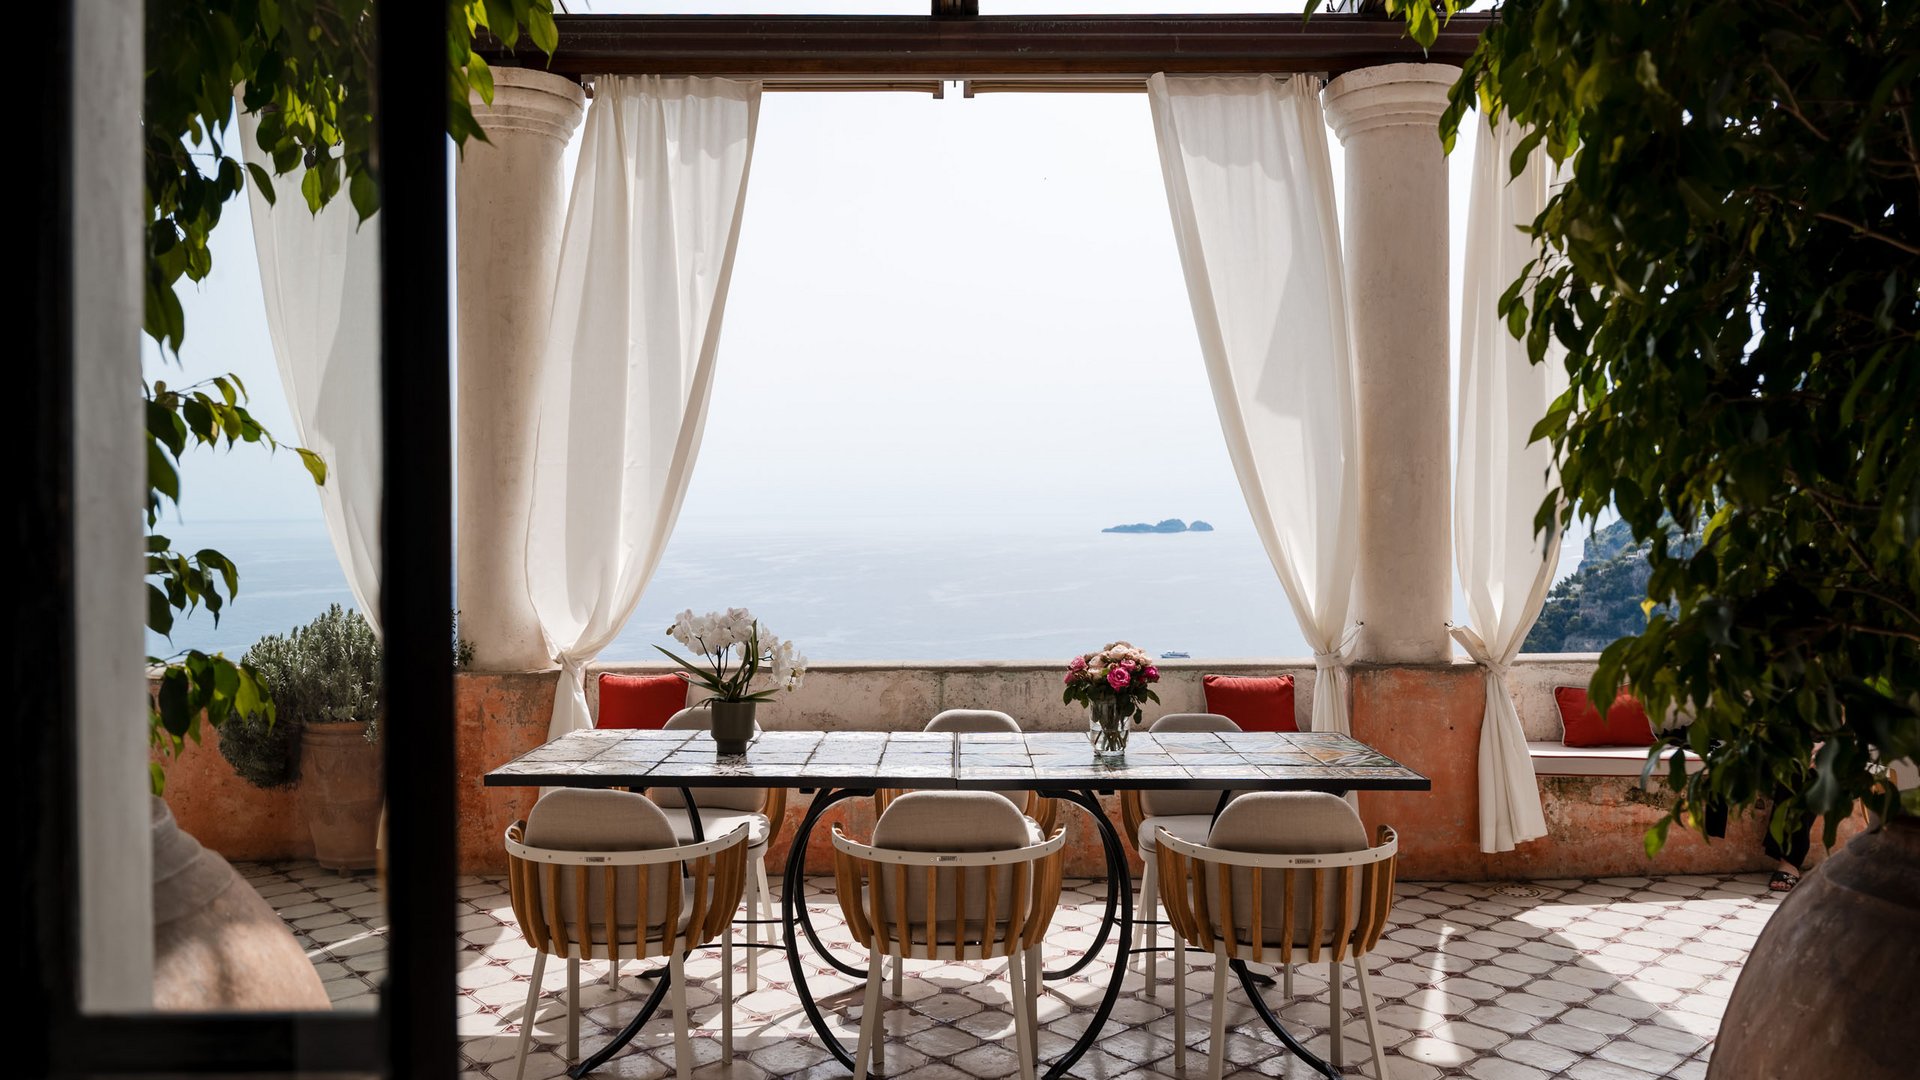 A villa in Positano to dream about